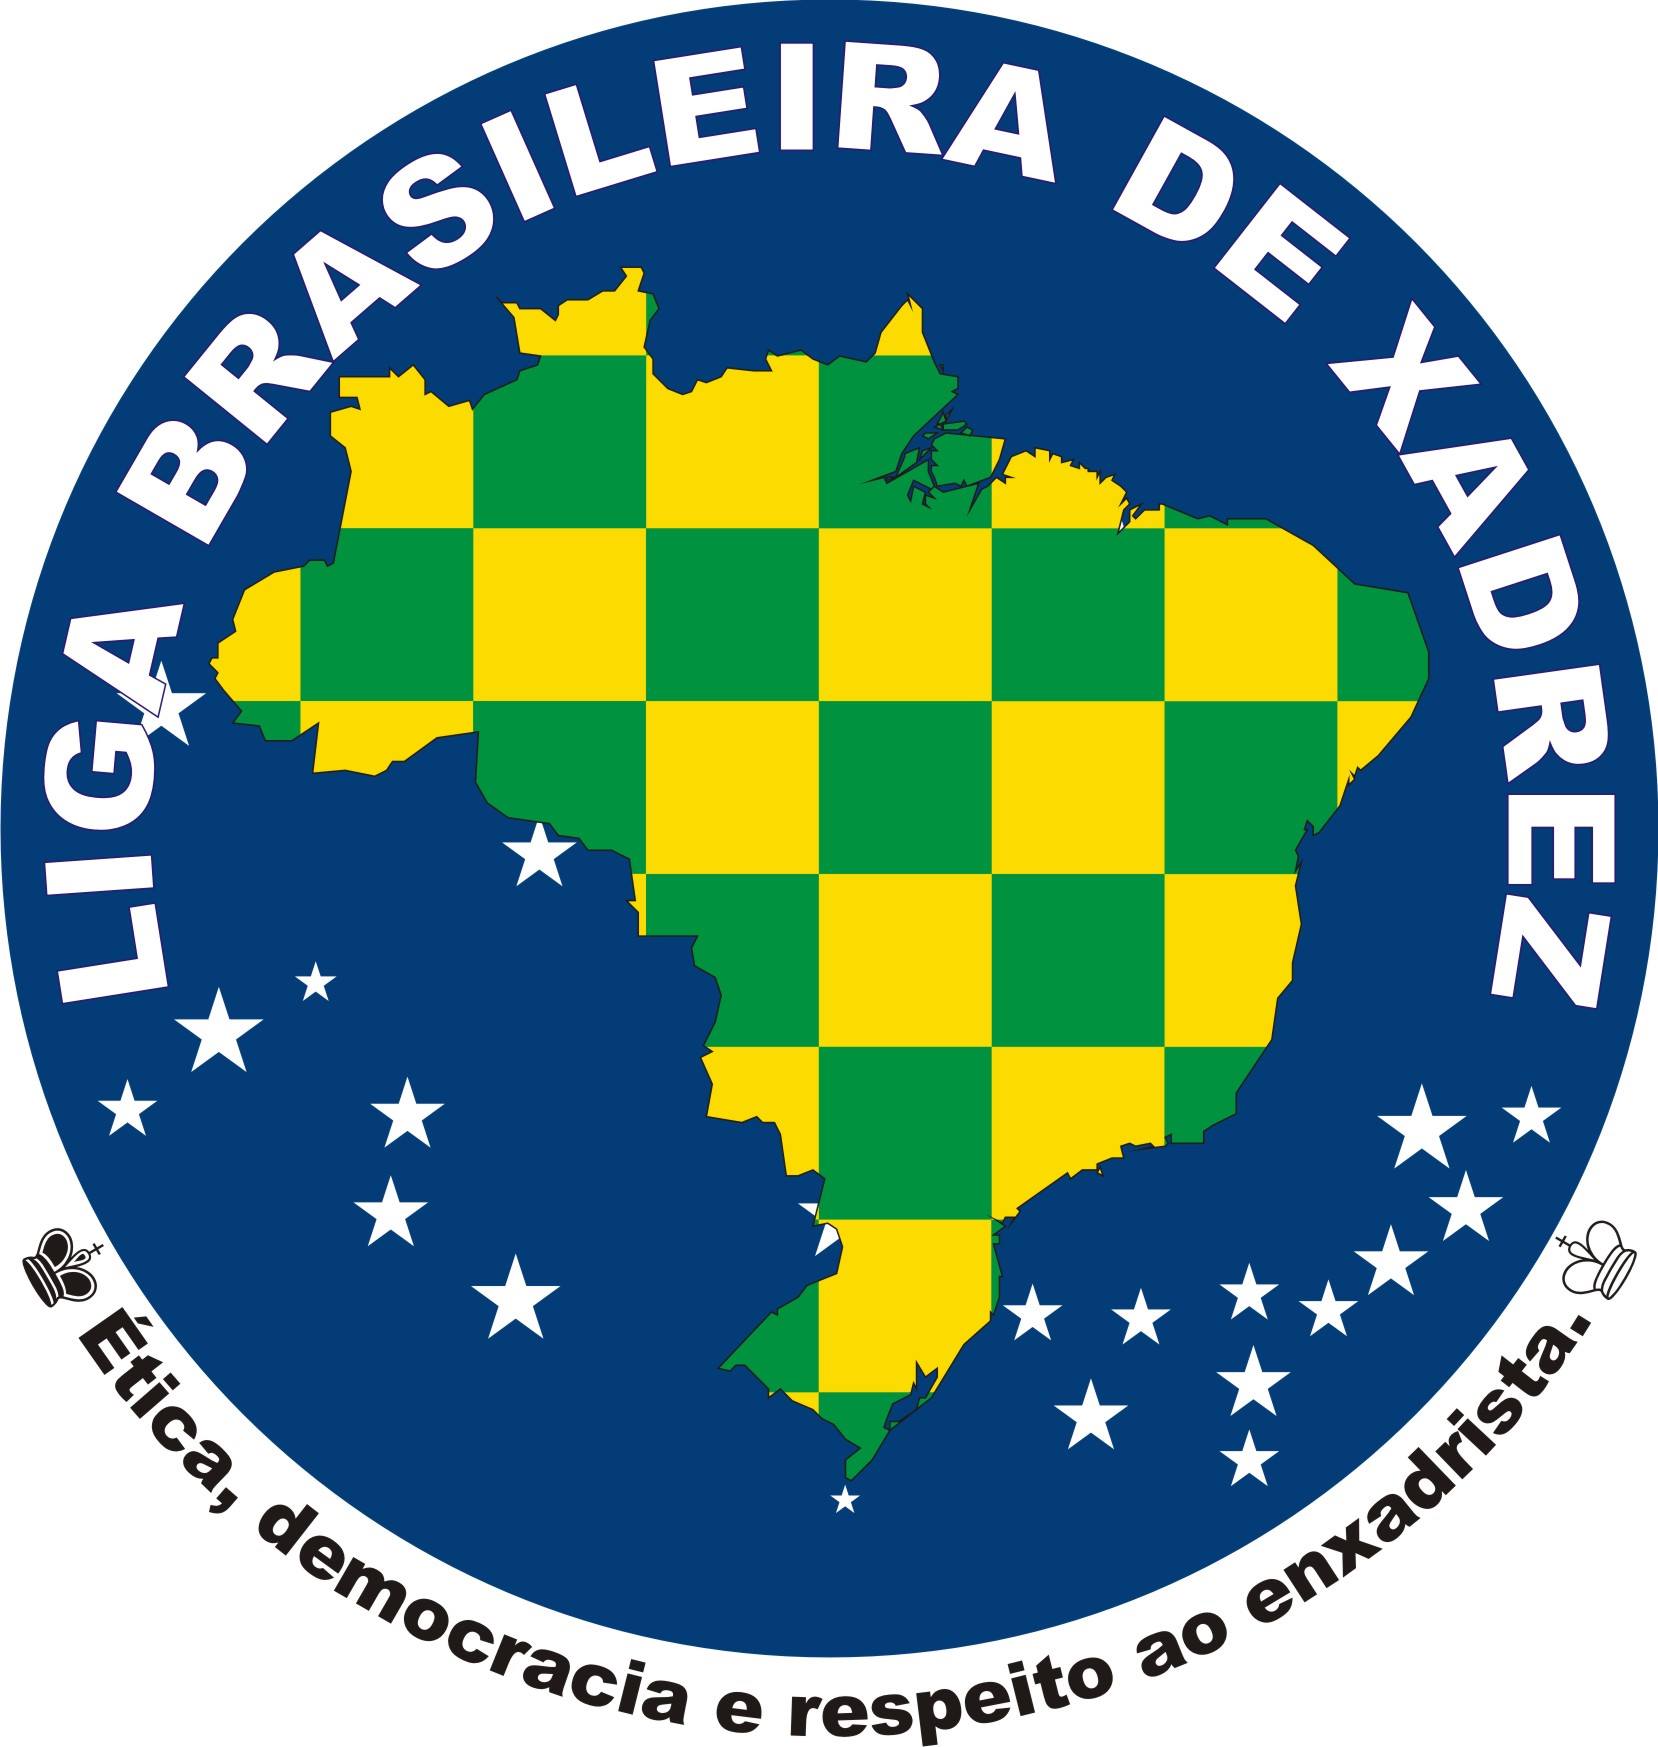 A Liga Brasileira de Xadrez já chegou na Bahia